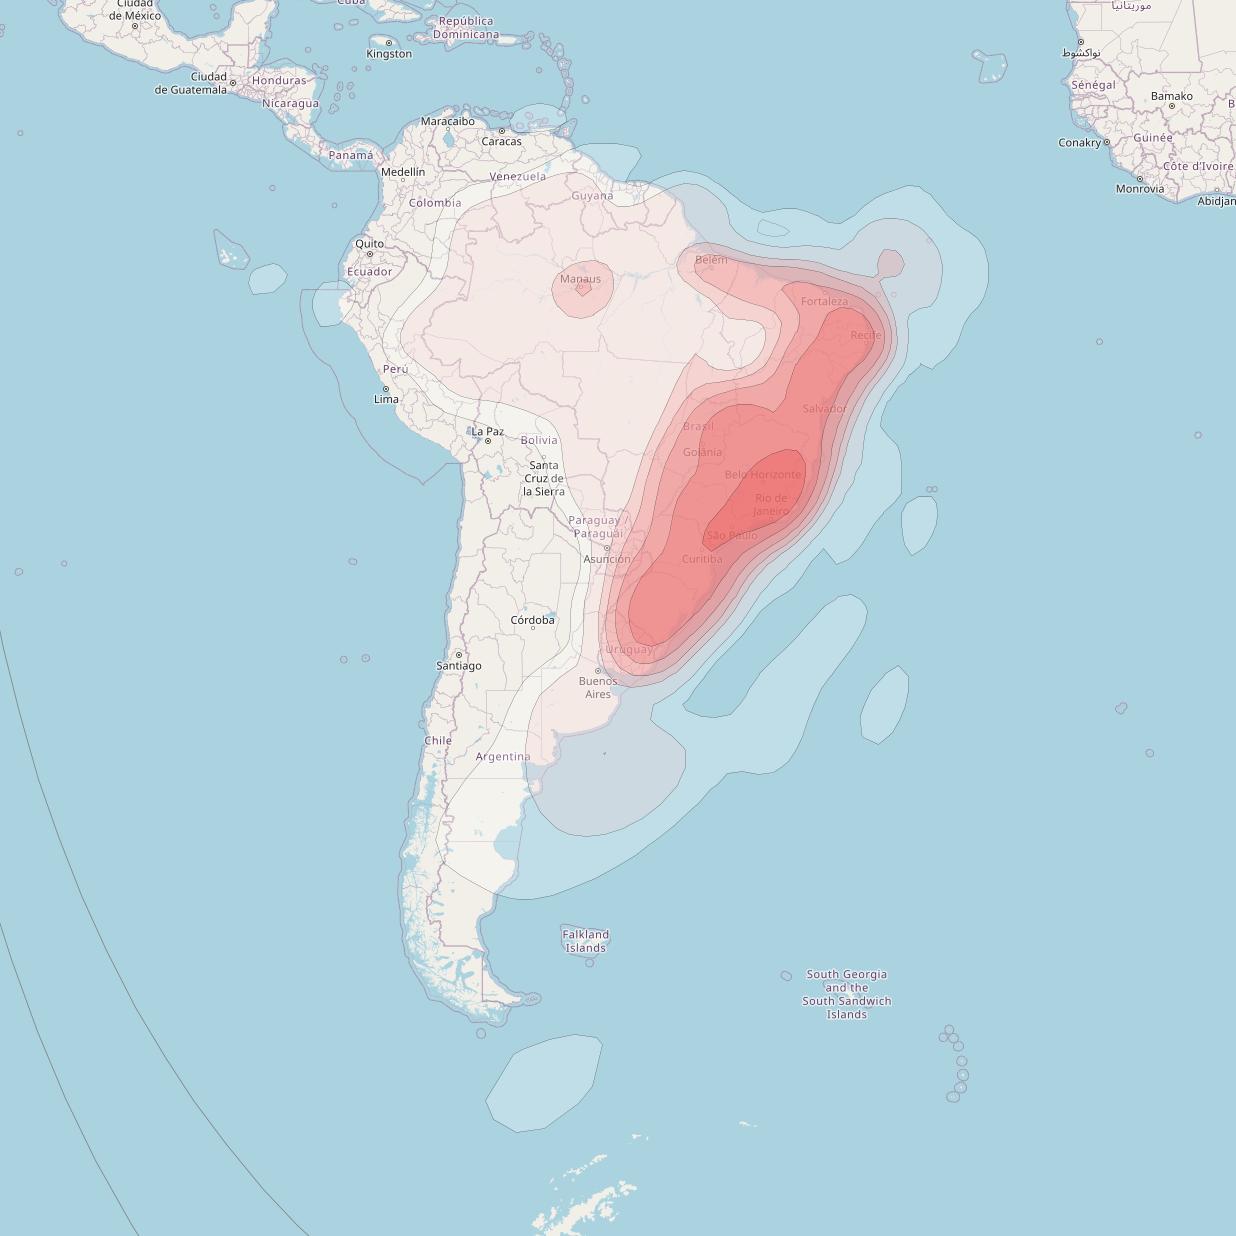 Intelsat 11 at 43° W downlink Ku-band Brasil Beam coverage map